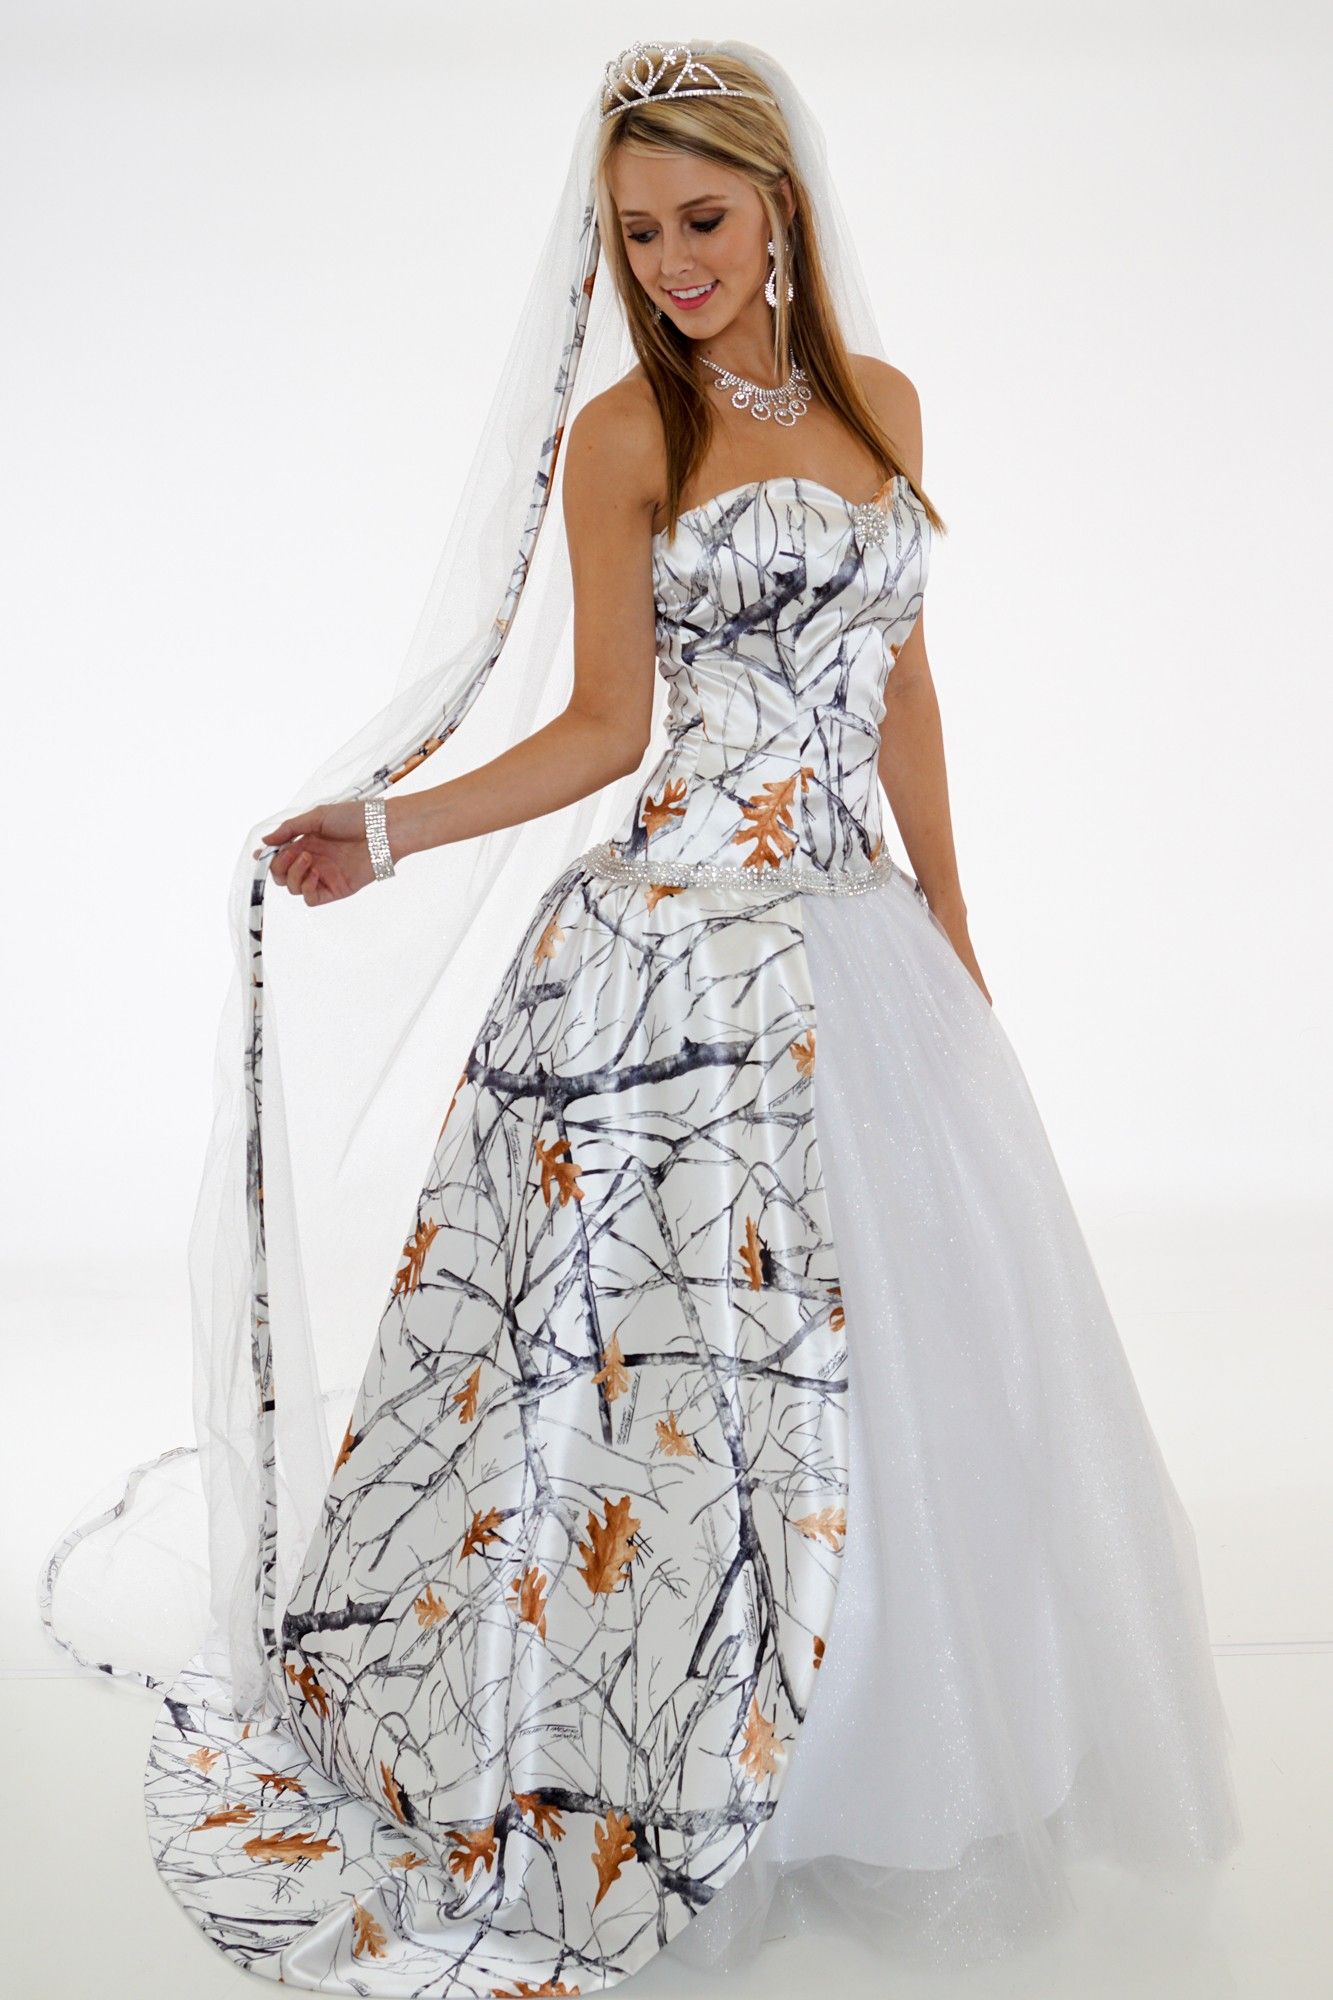 White camo wedding gown